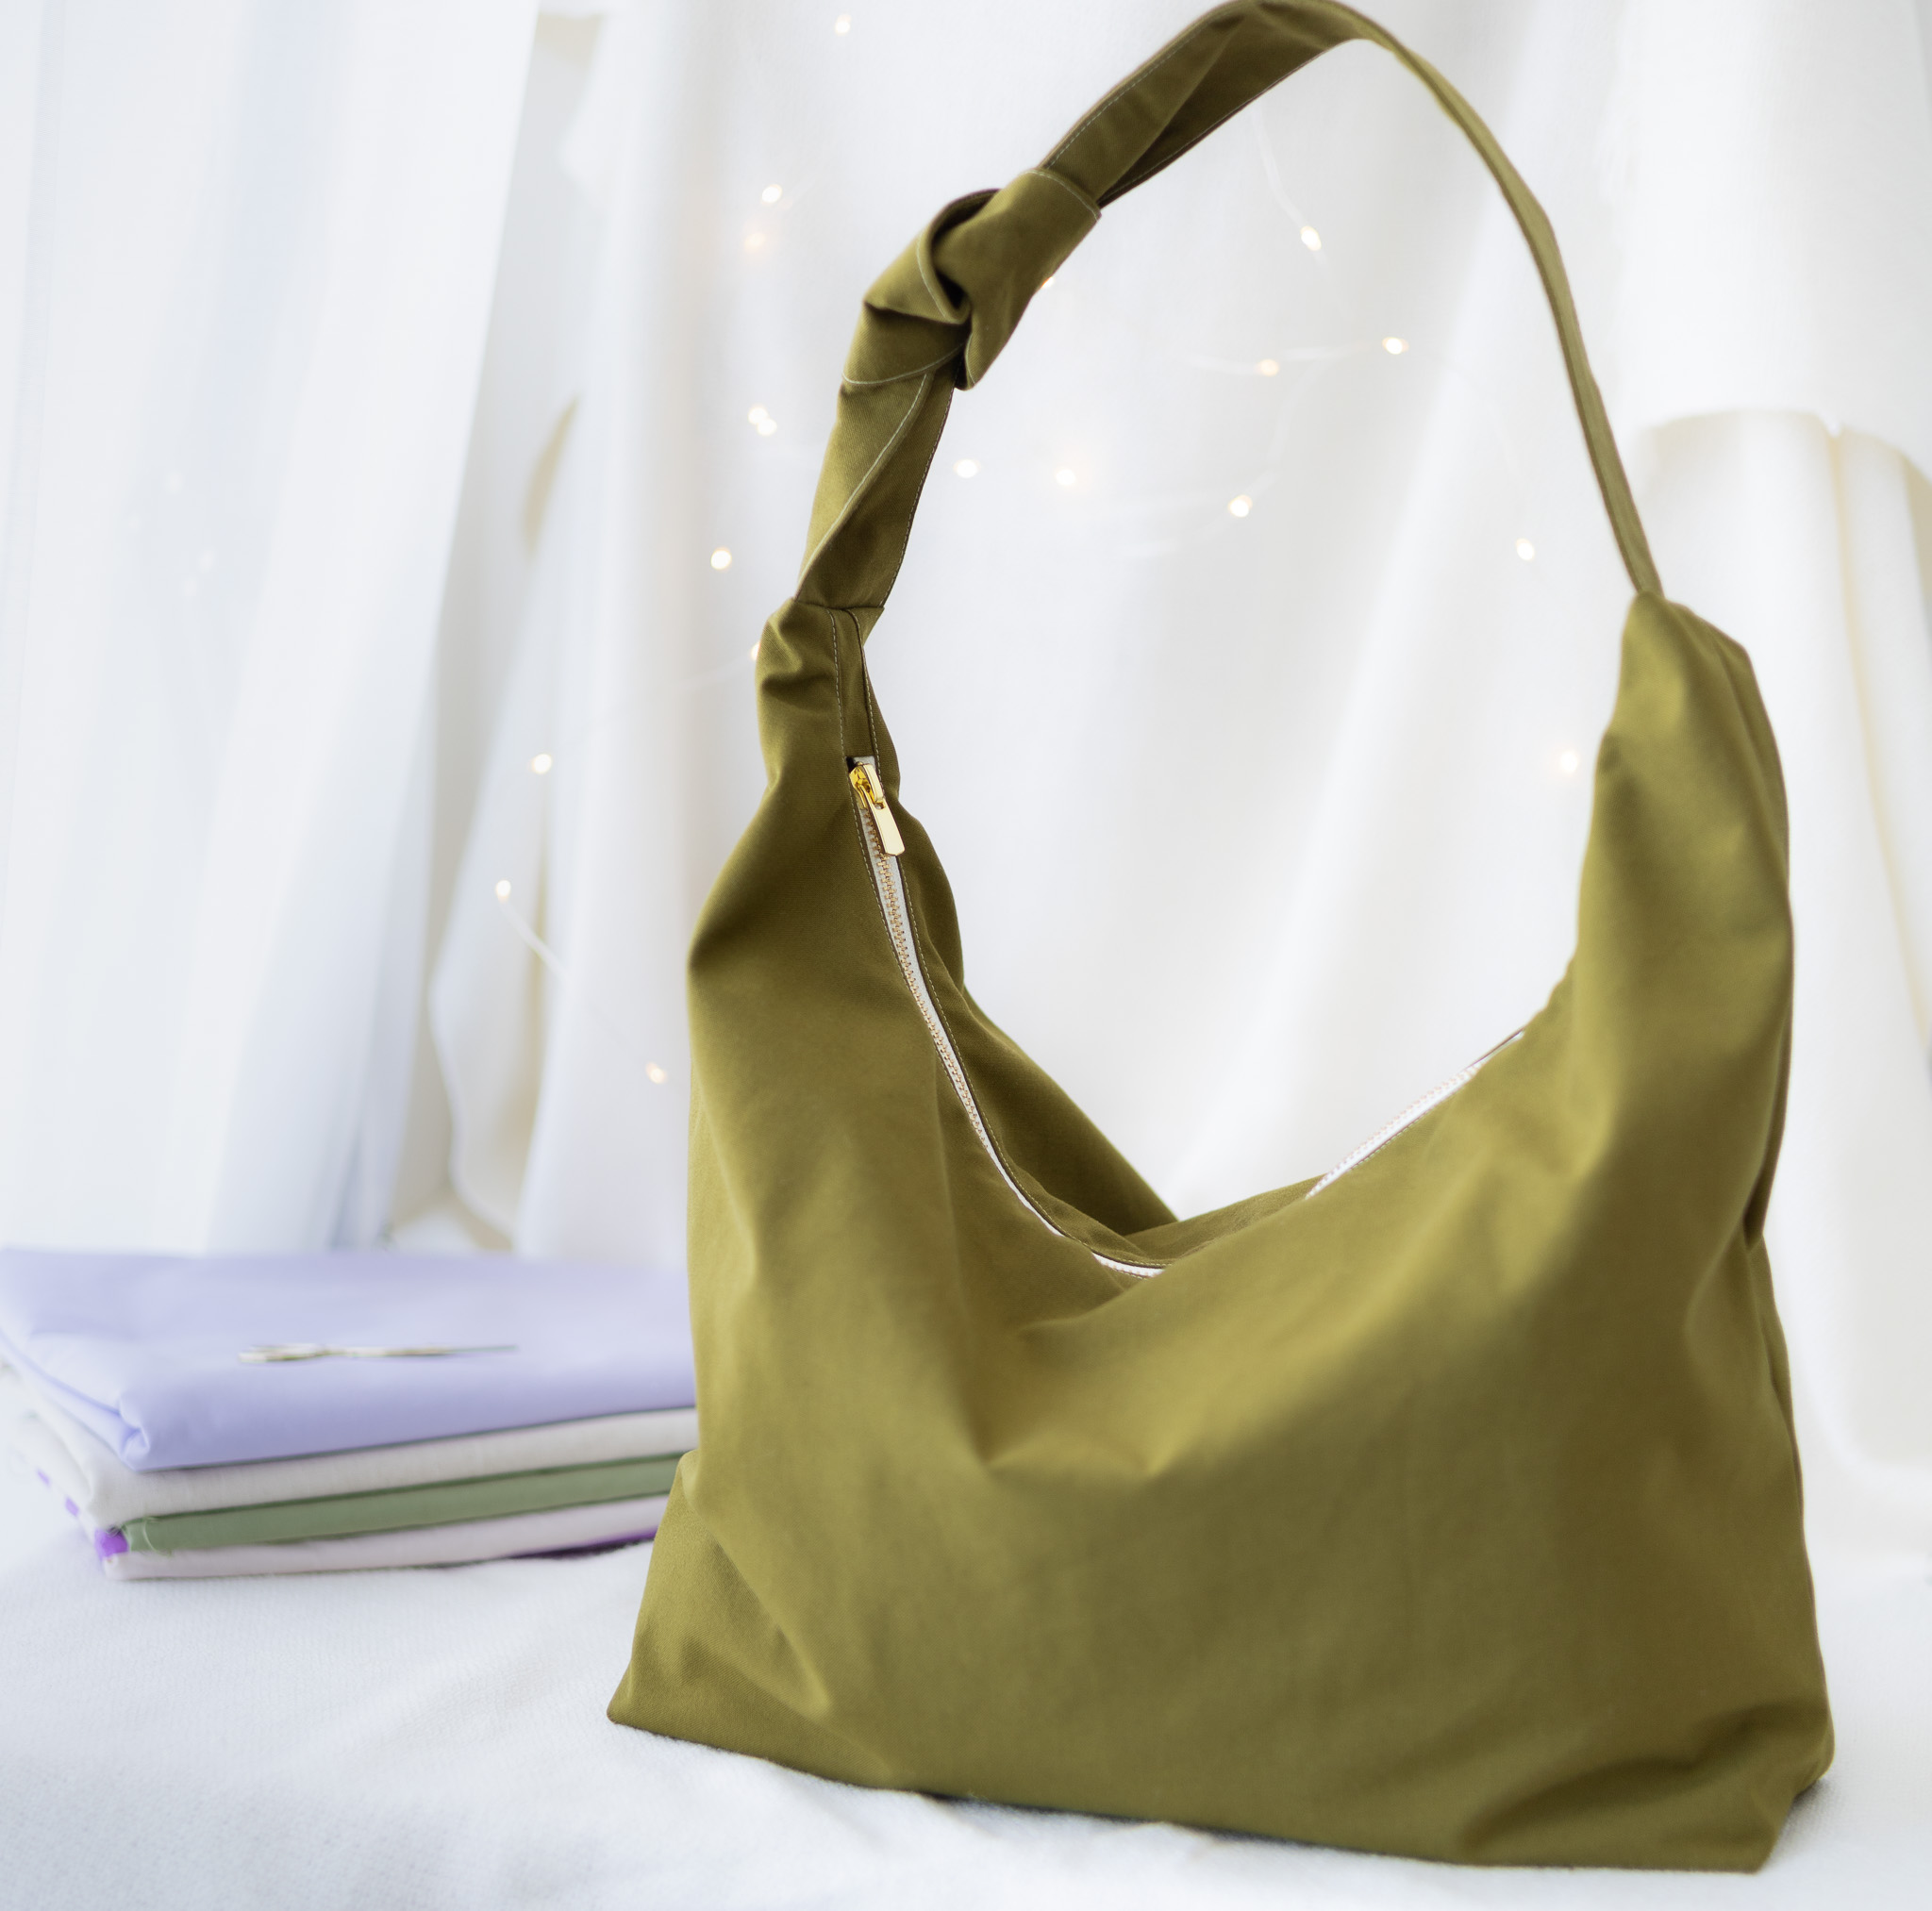 Diese Handtasche wirst du lieben: praktische Shopper Bag selber nähen •  Make it Yours